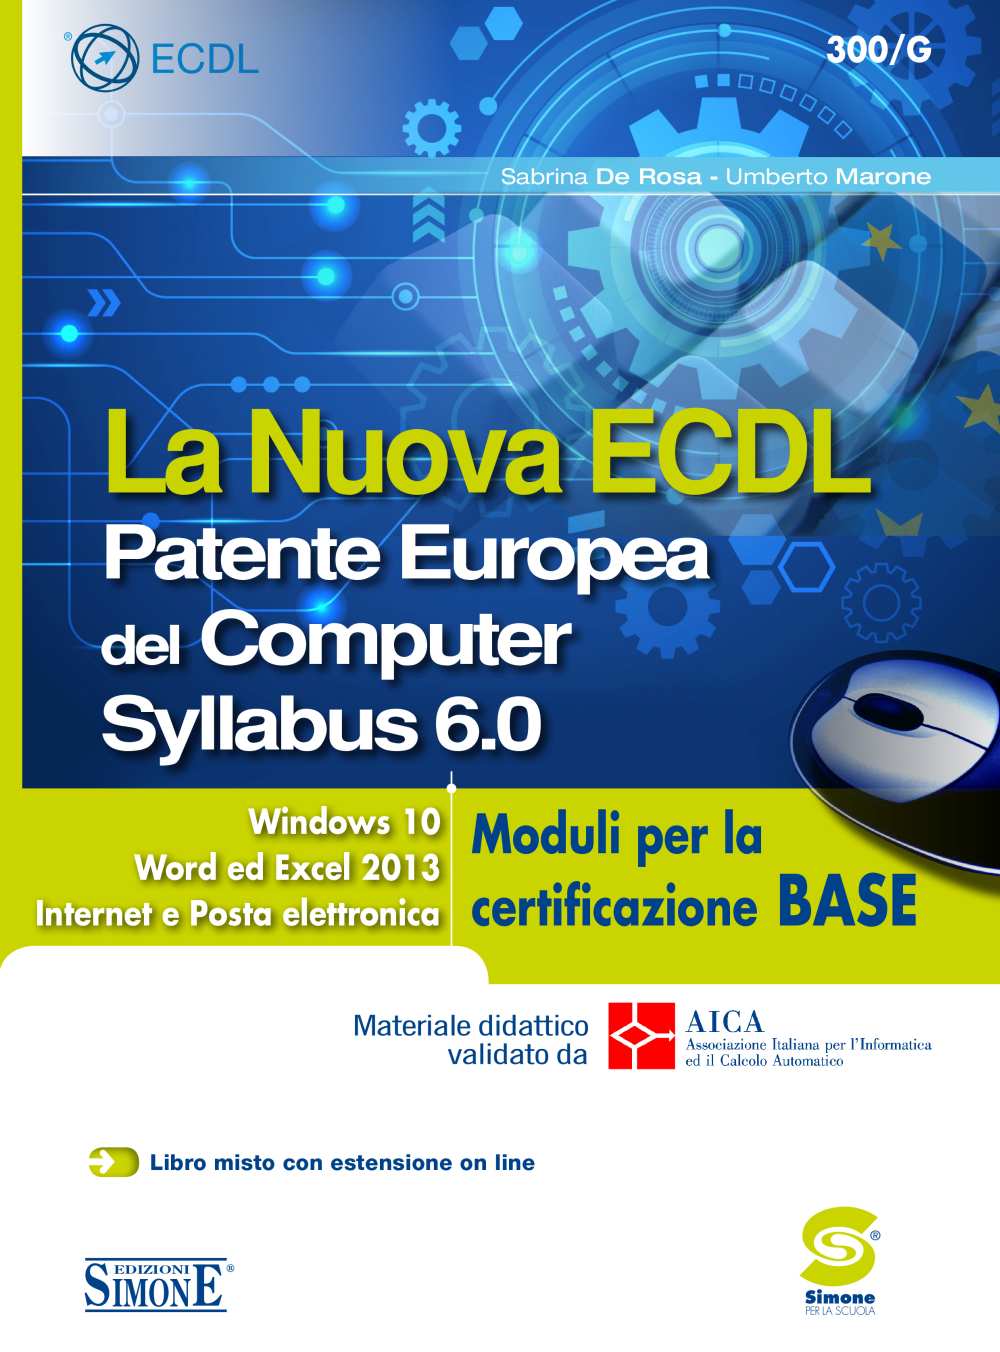 La Nuova ECDL - Patente Europea del Computer - Syllabus 6.0 - Moduli per la certificazione BASE - 300/G